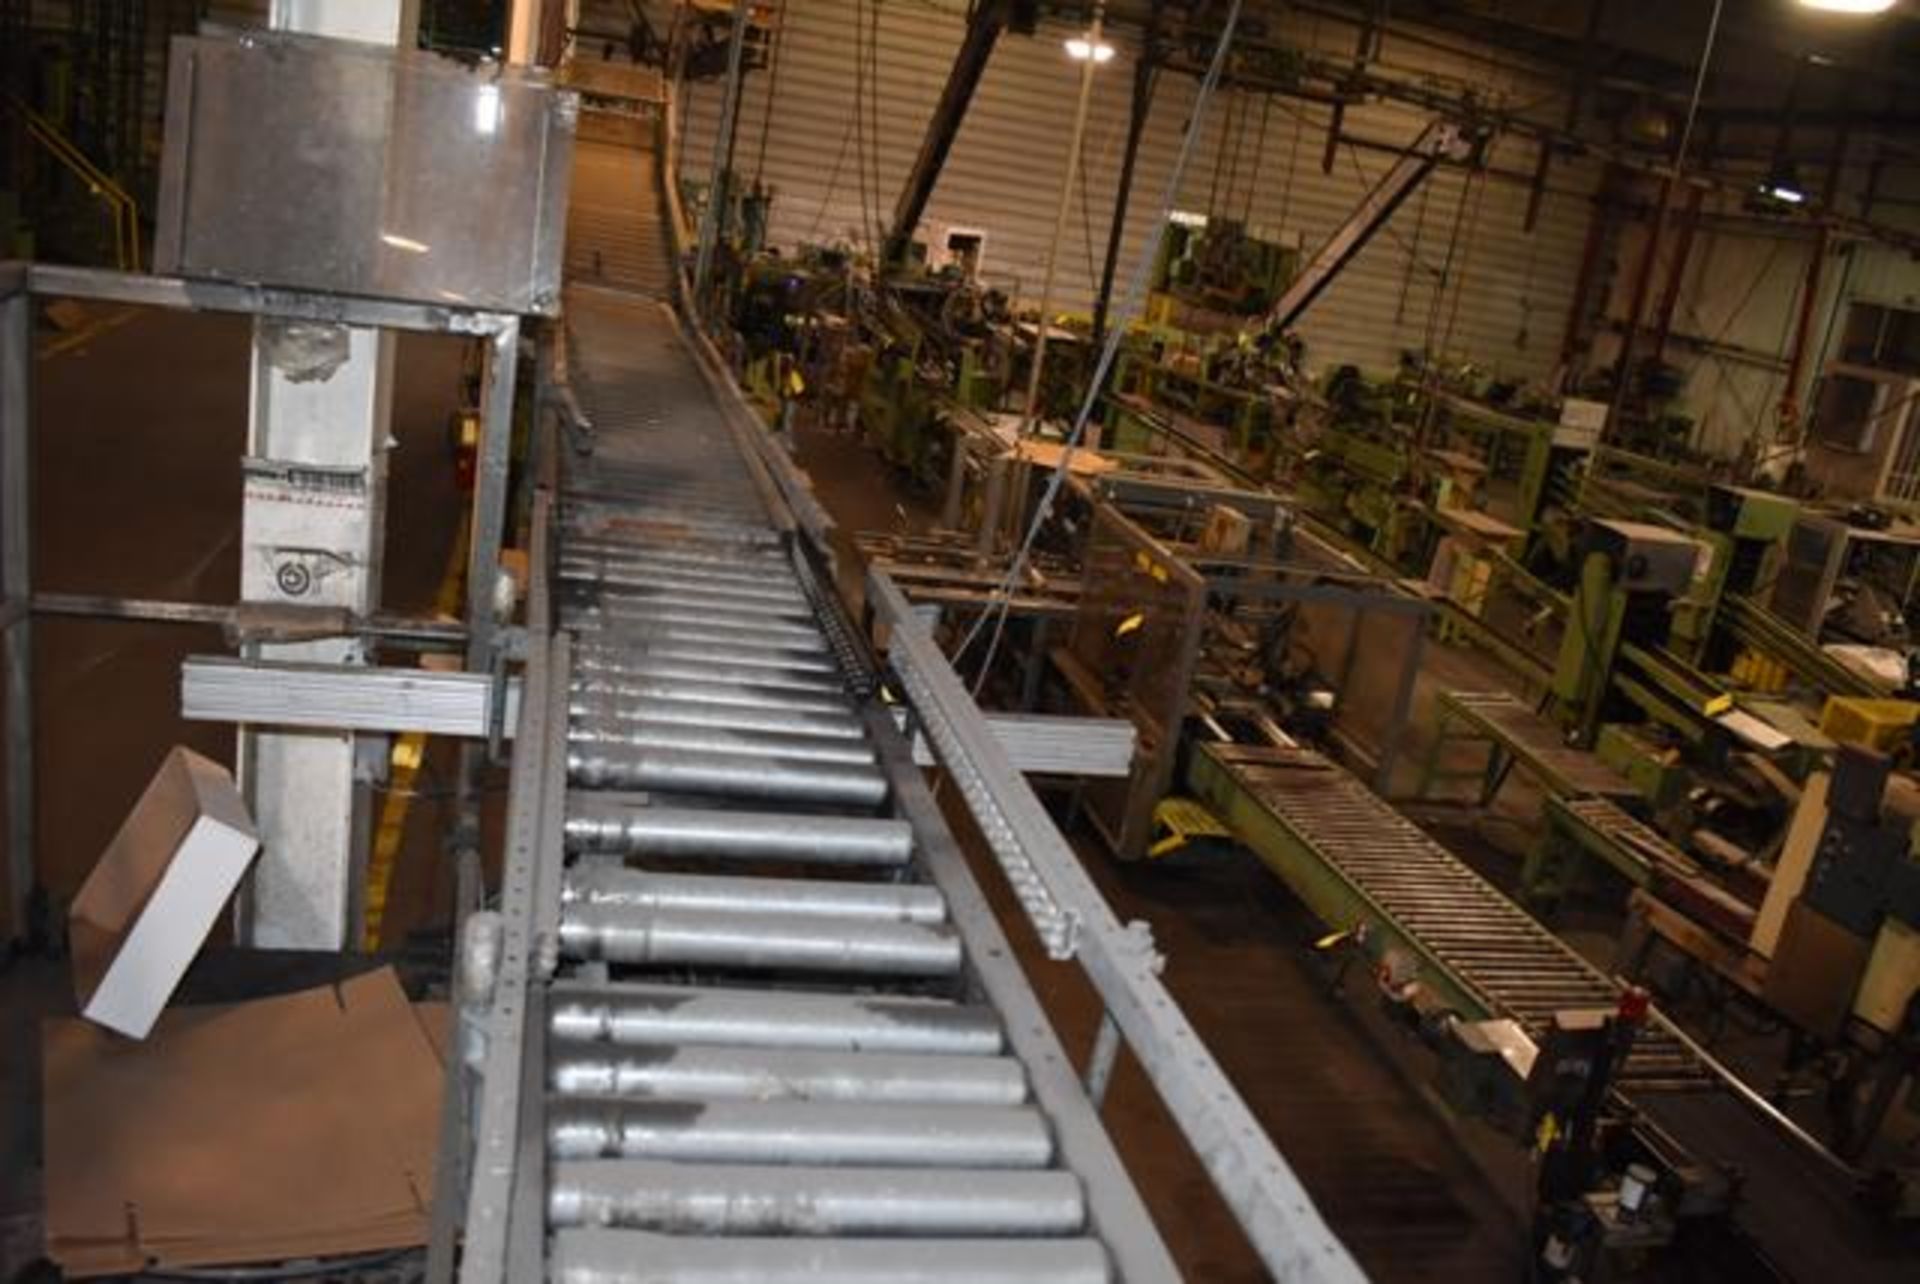 Hytrol Conveyor - Motorized Roller Conveyor, Approx. 40' Length - Image 2 of 2